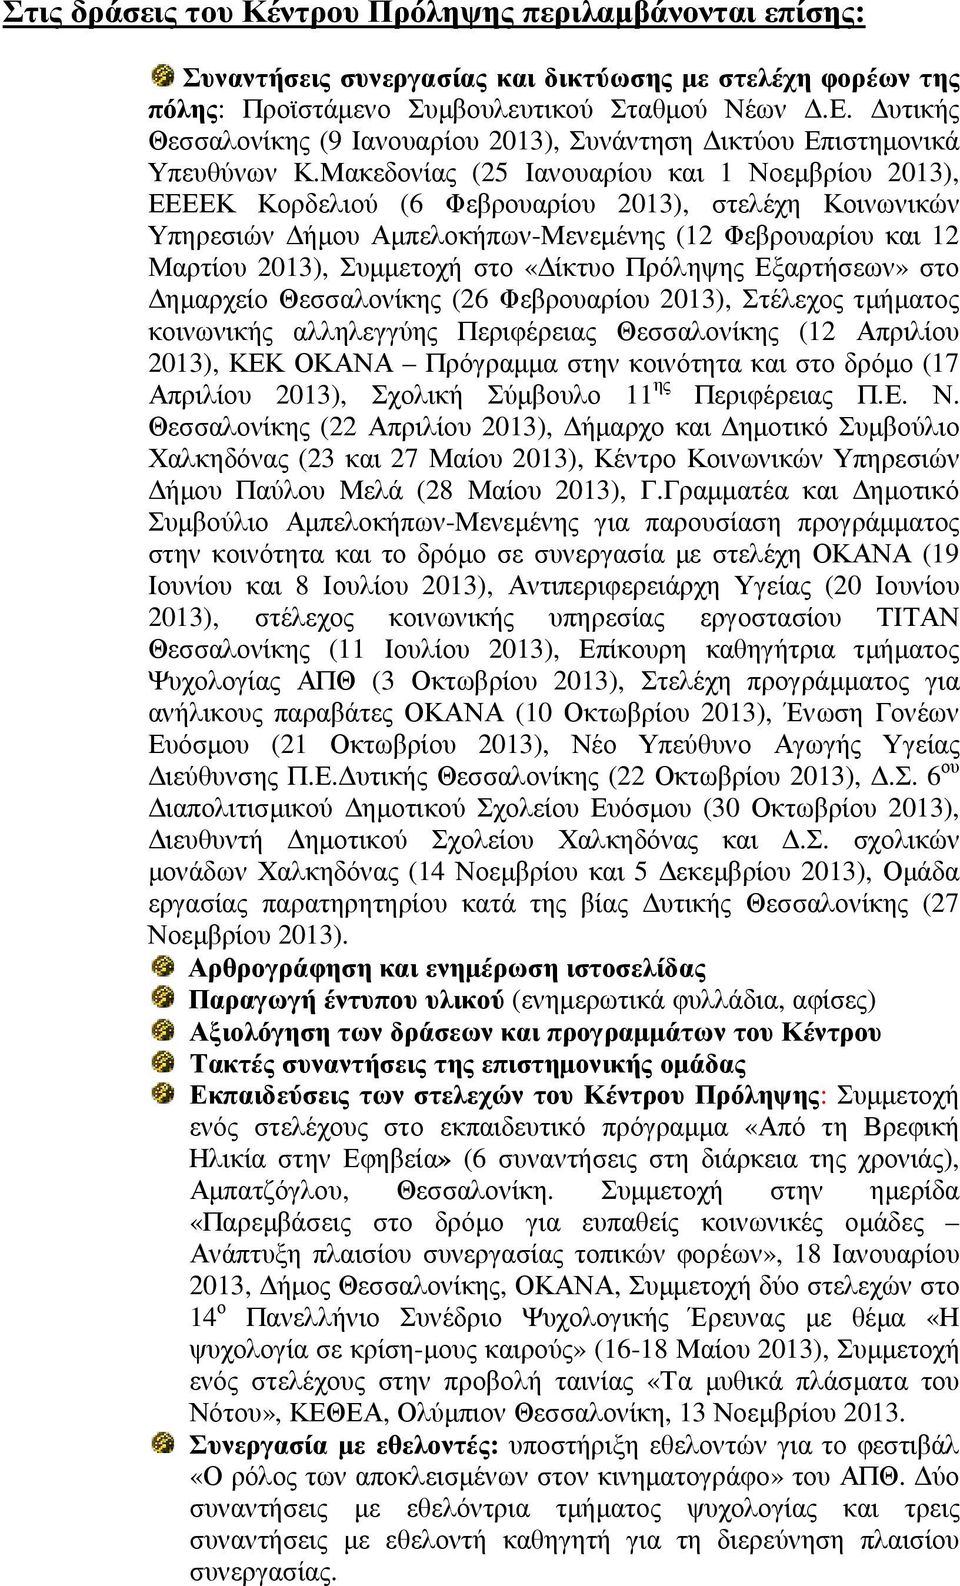 Μακεδονίας (25 Ιανουαρίου και 1 Νοεµβρίου 2013), ΕΕΕΕΚ Κορδελιού (6 Φεβρουαρίου 2013), στελέχη Κοινωνικών Υπηρεσιών ήµου Αµπελοκήπων-Μενεµένης (12 Φεβρουαρίου και 12 Μαρτίου 2013), Συµµετοχή στο